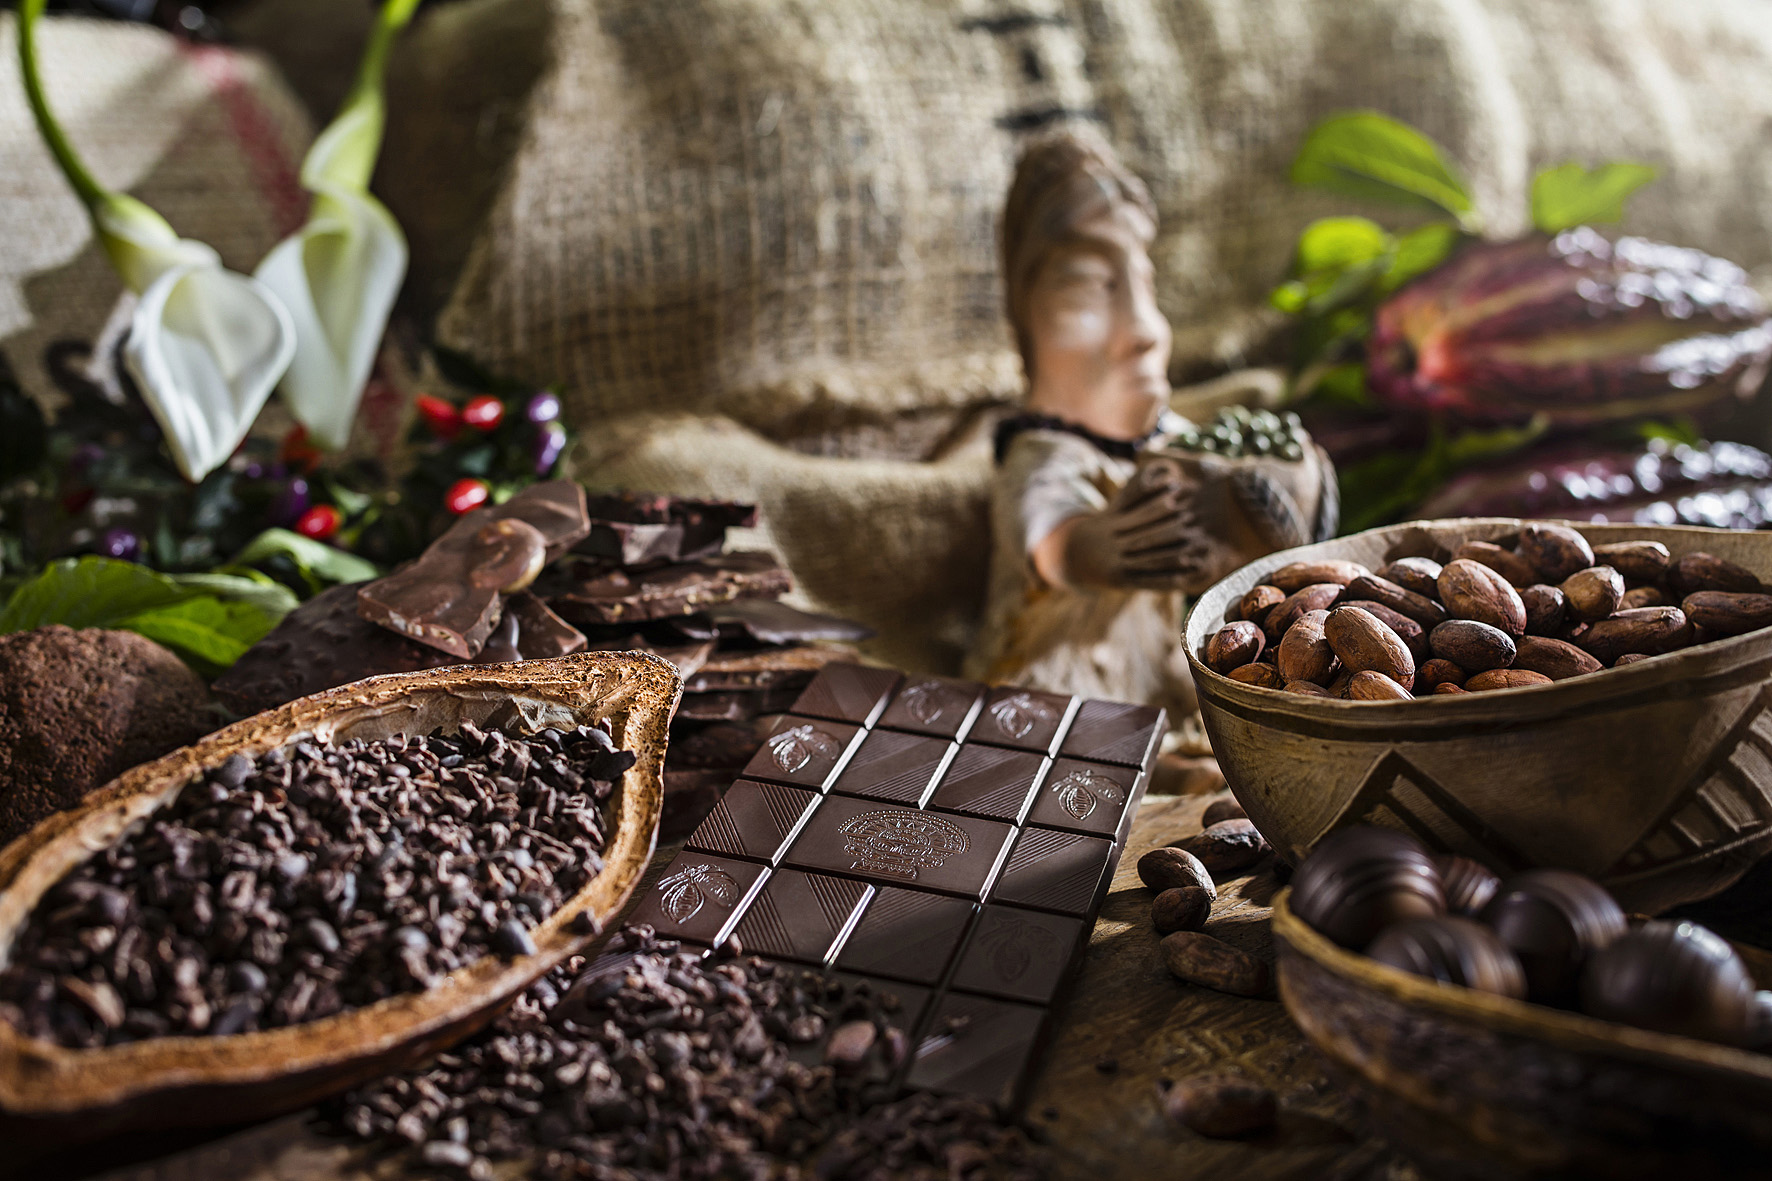 90 Min. Schokoladen-Workshop und -Tasting inkl. mexikanische Trinkschokolade für 4 Personen bei Soirée Chocolat